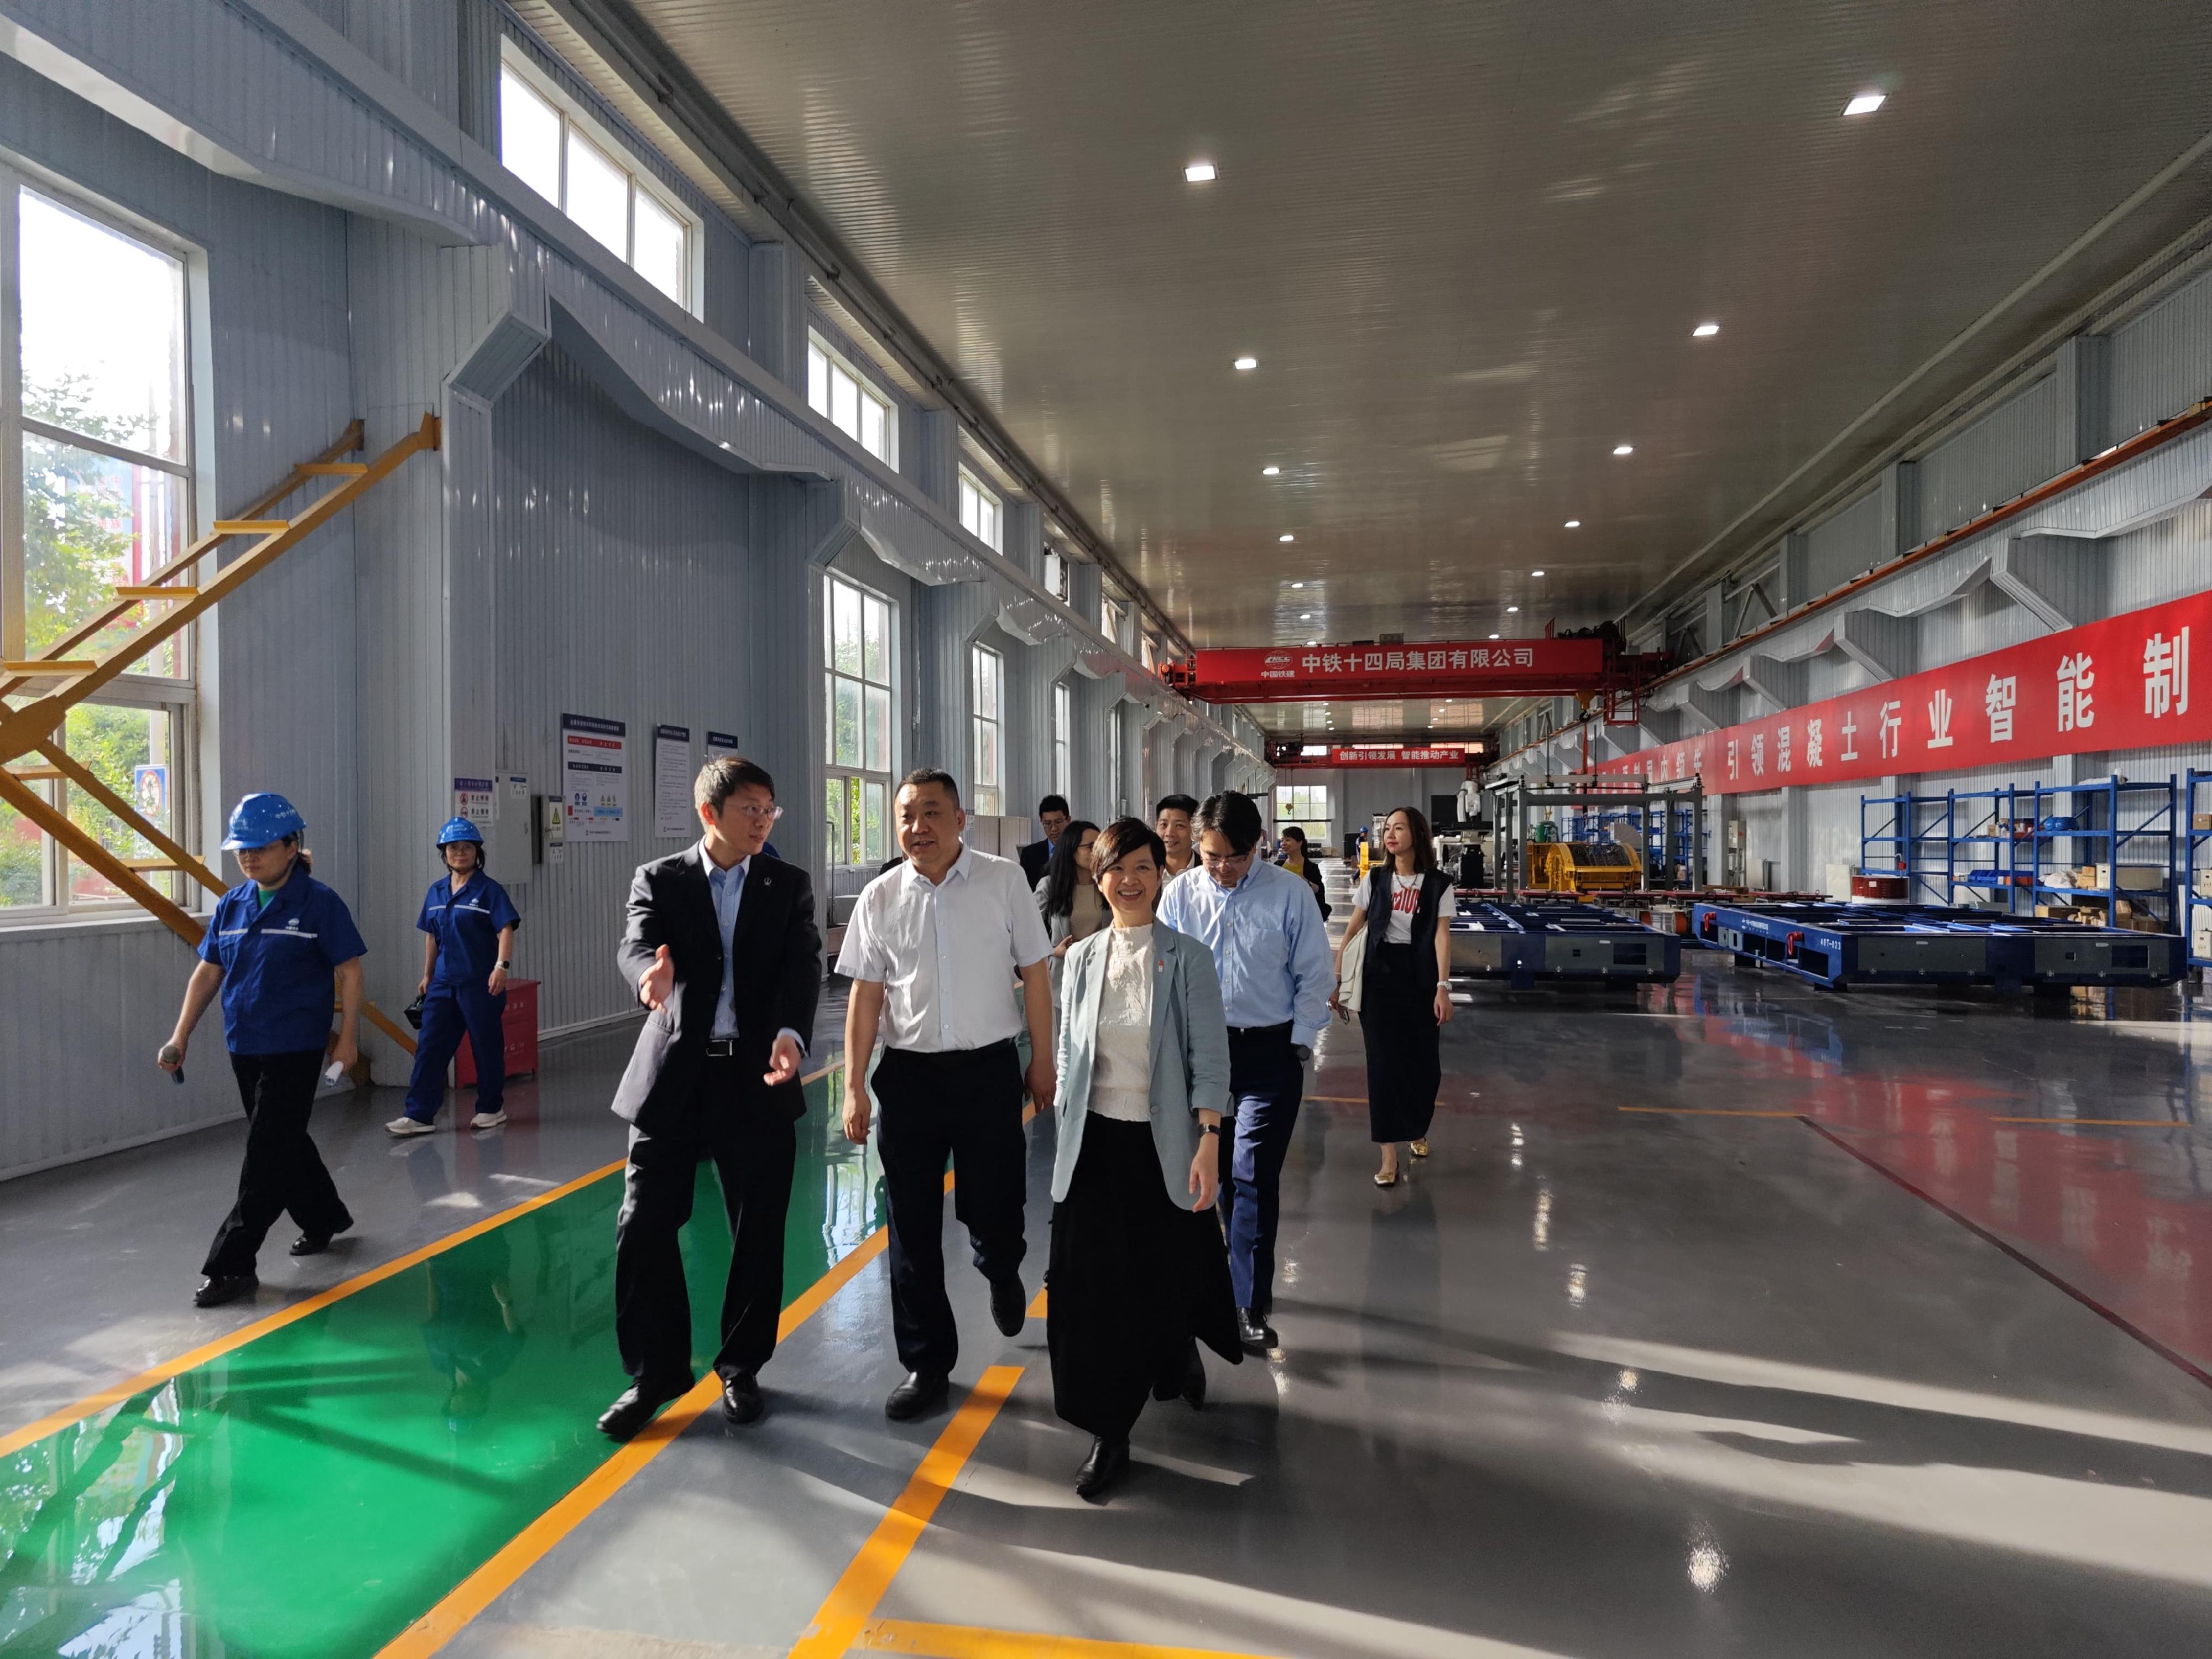 何永賢（前排右）昨日參觀中國鐵道建築集團有限公司轄下鋼結構模組化建築工廠，親身了解該集團在「組裝合成」建築法（MiC）及建築機械人應用等創新建築技術方面的最新發展。